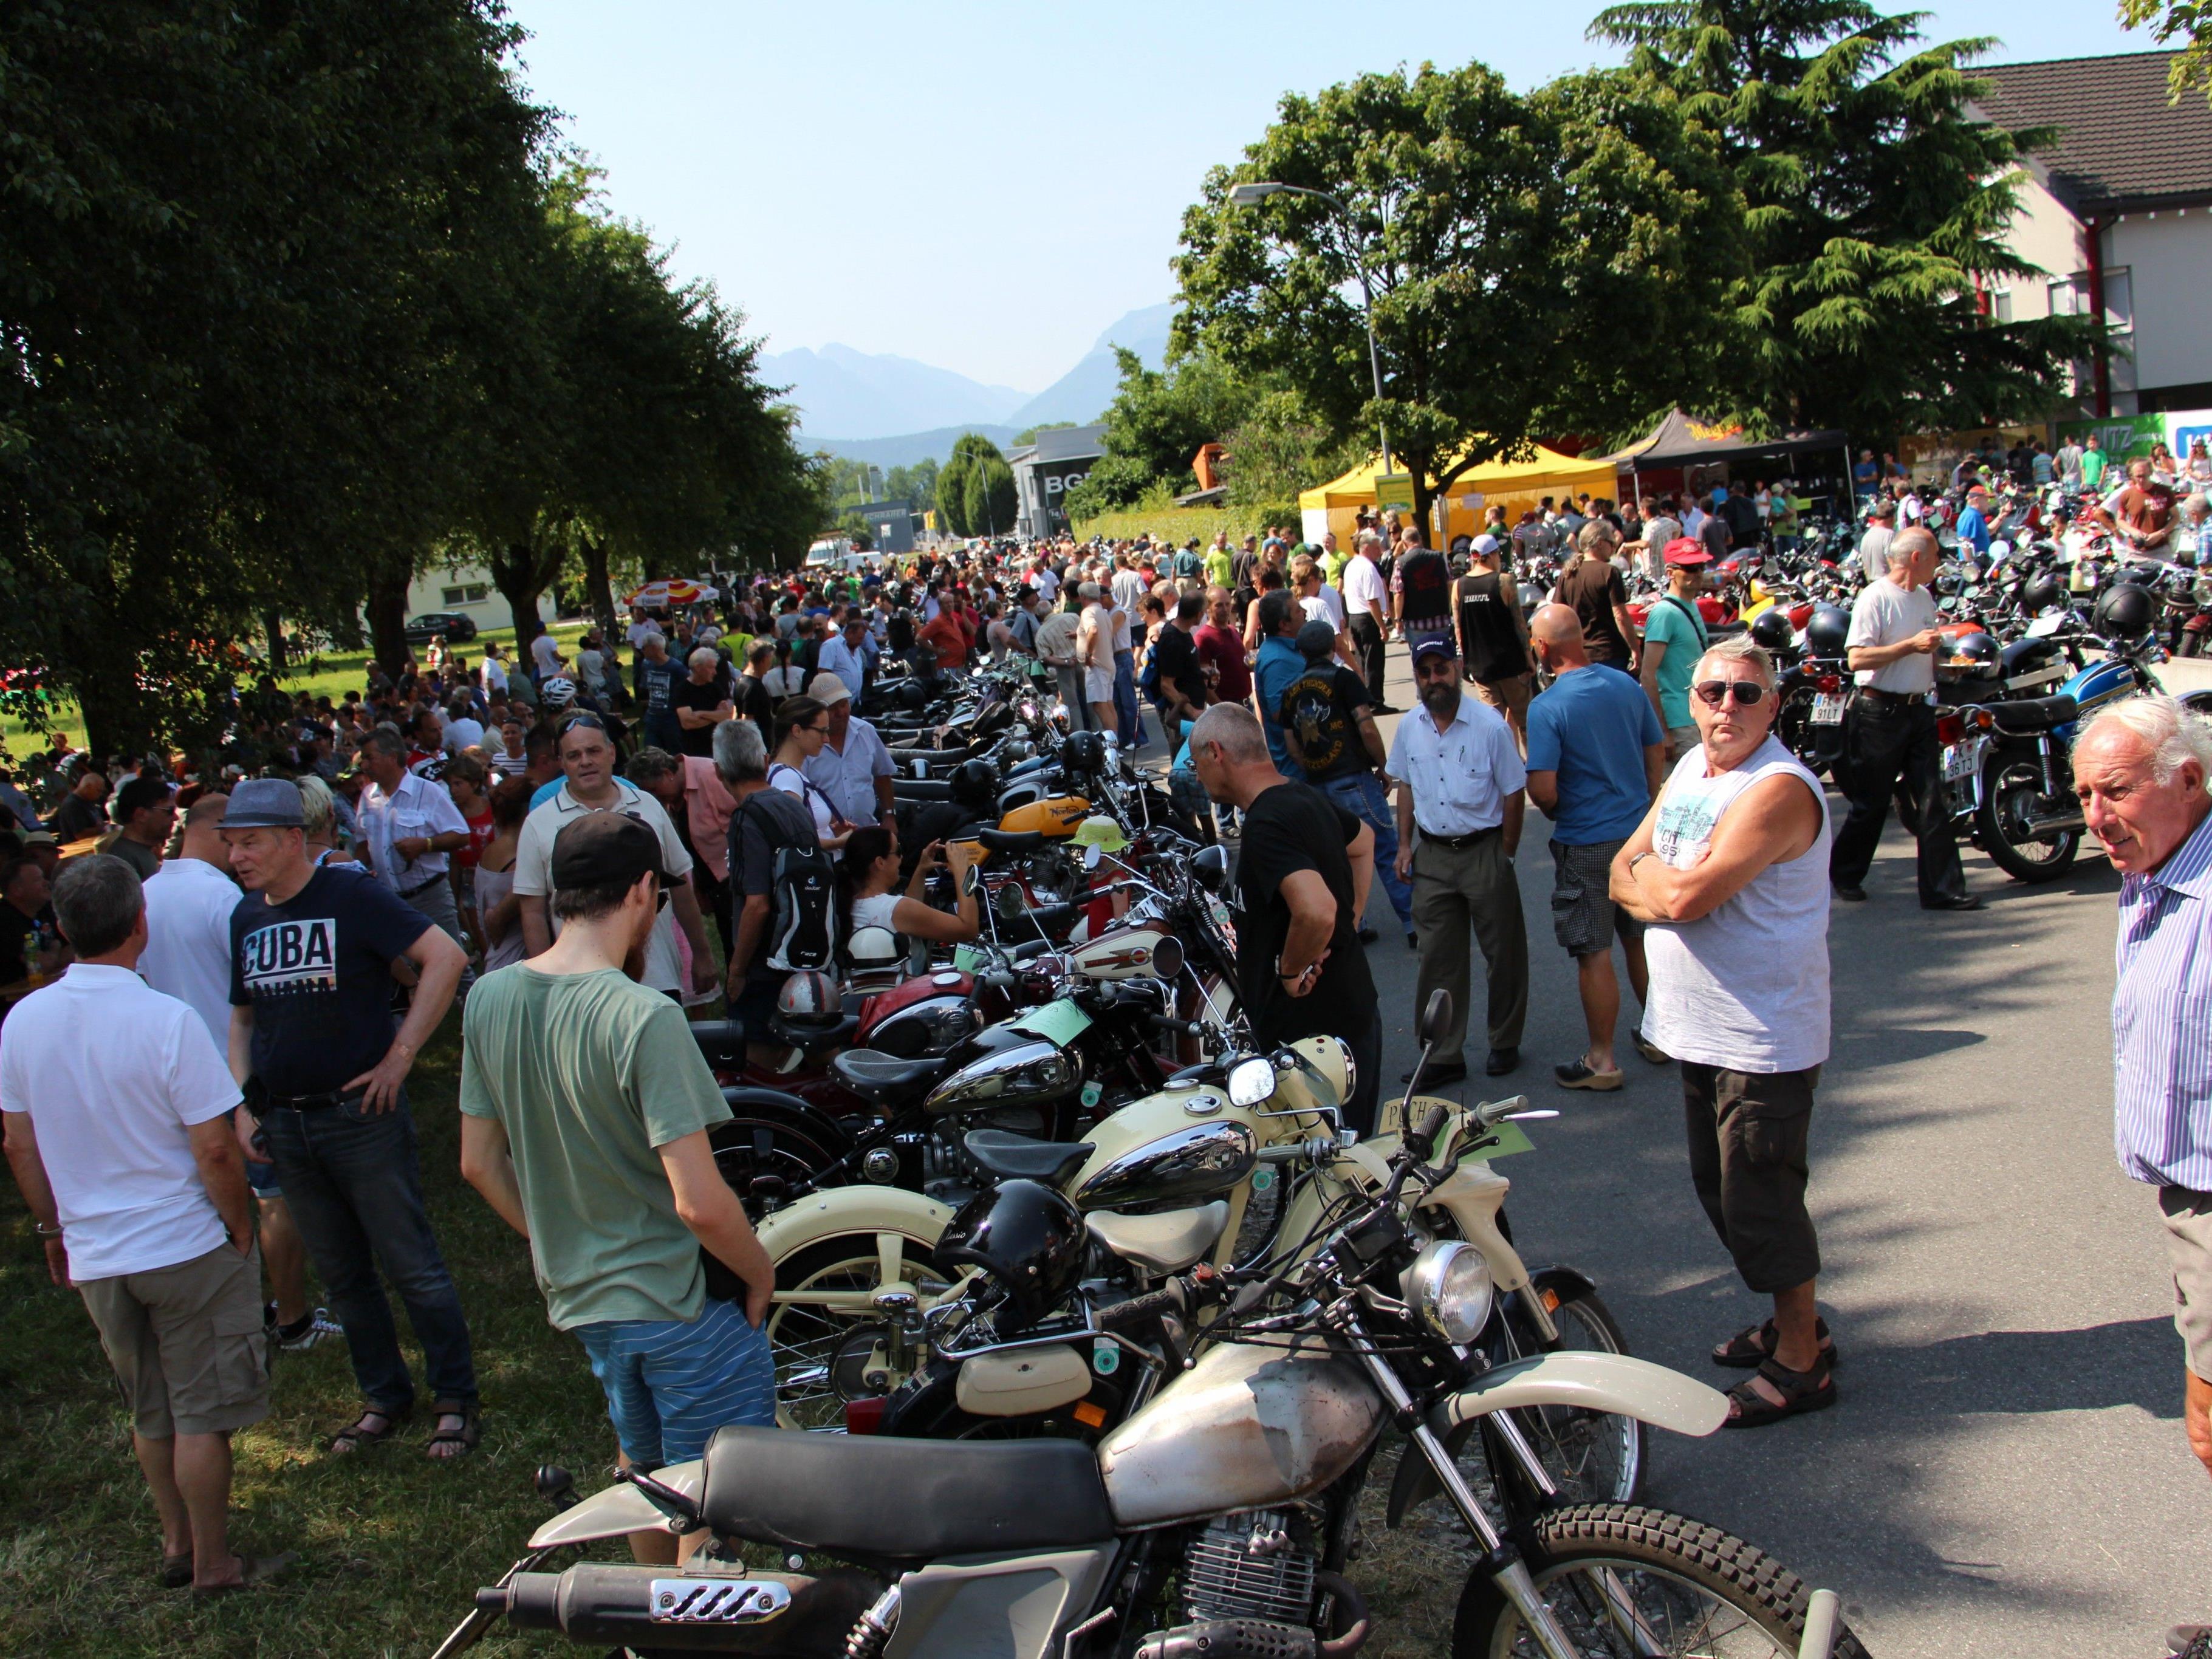 Spektakuläres Treffen alter Motorräder am Sonntag, 16. Juli ab 9 Uhr in Weiler.